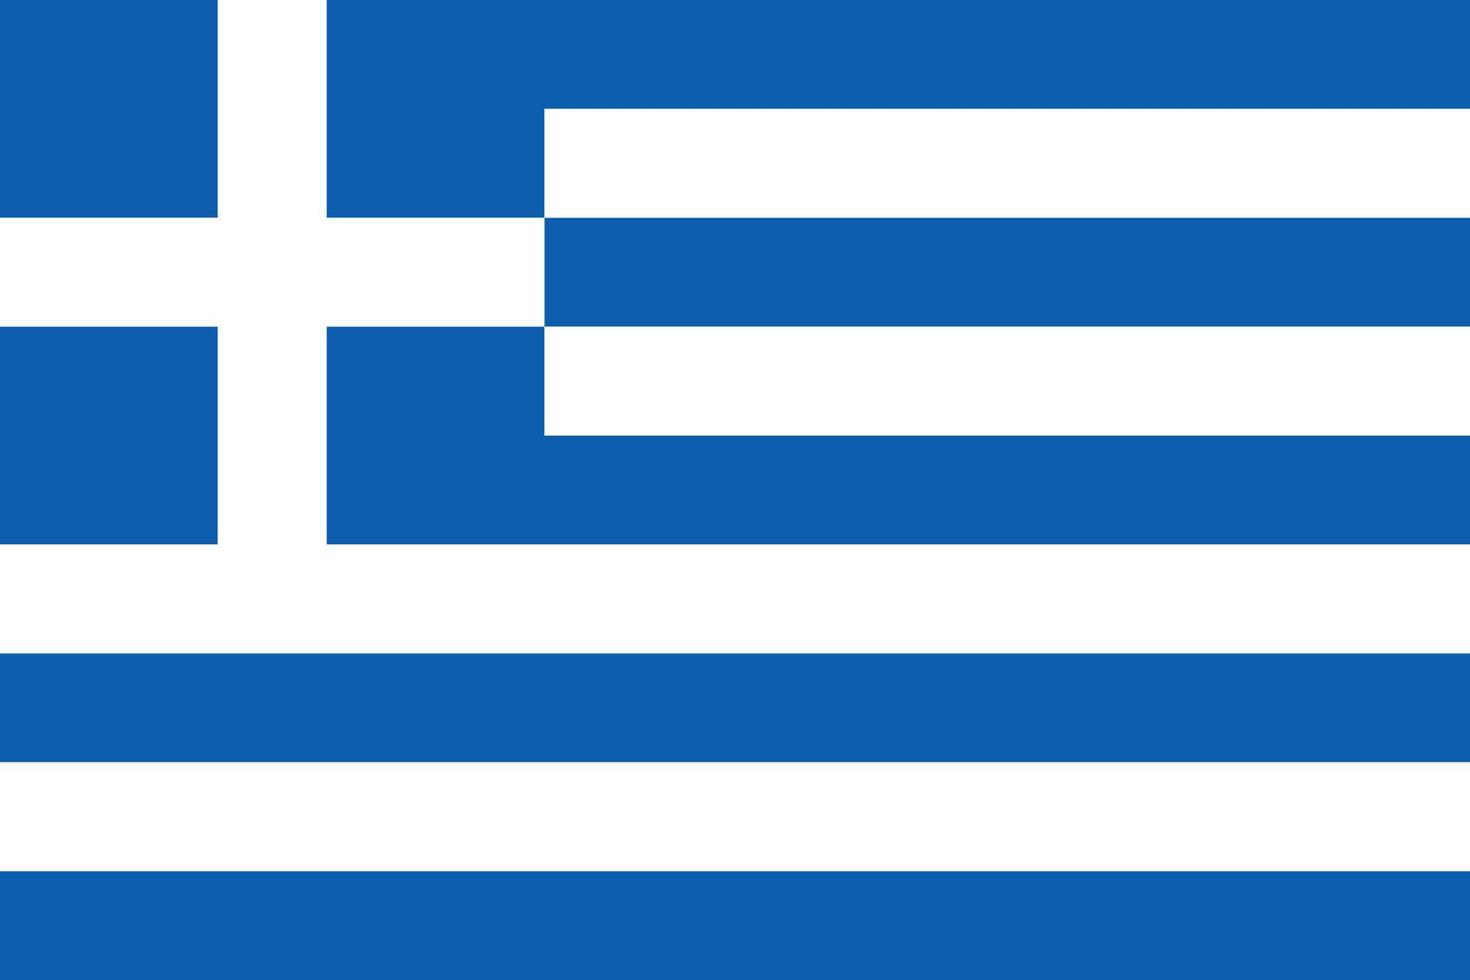 Grecia semplice bandiera corretta taglia, proporzione, colori. vettore